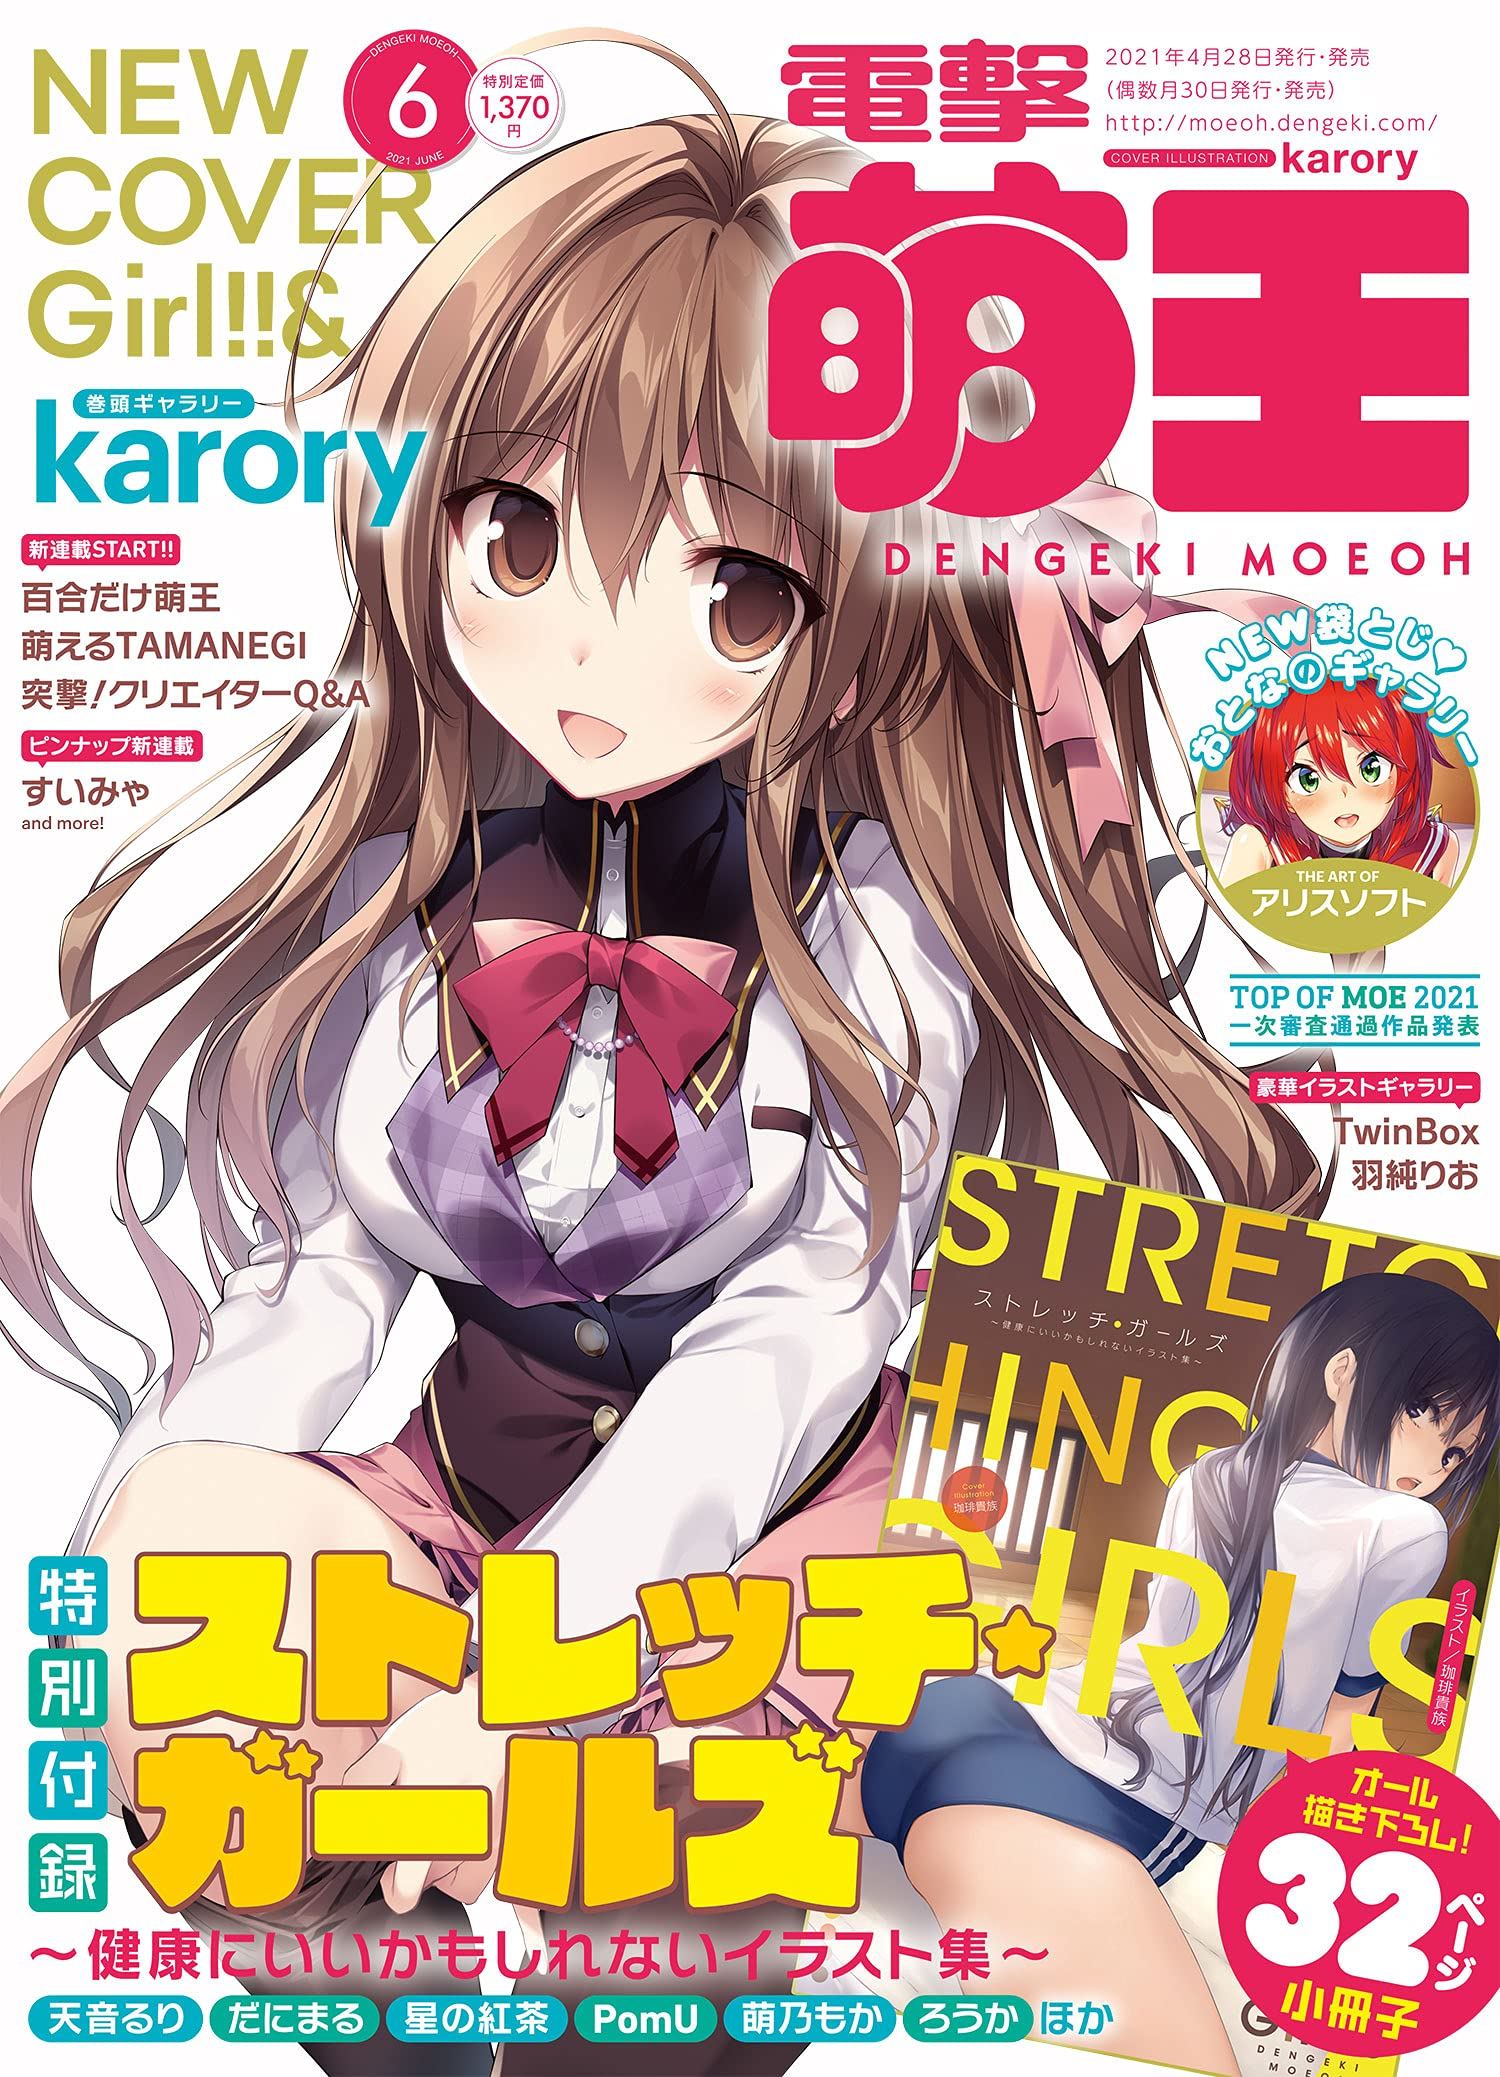 Dengeki Moeoh June 21 Issue